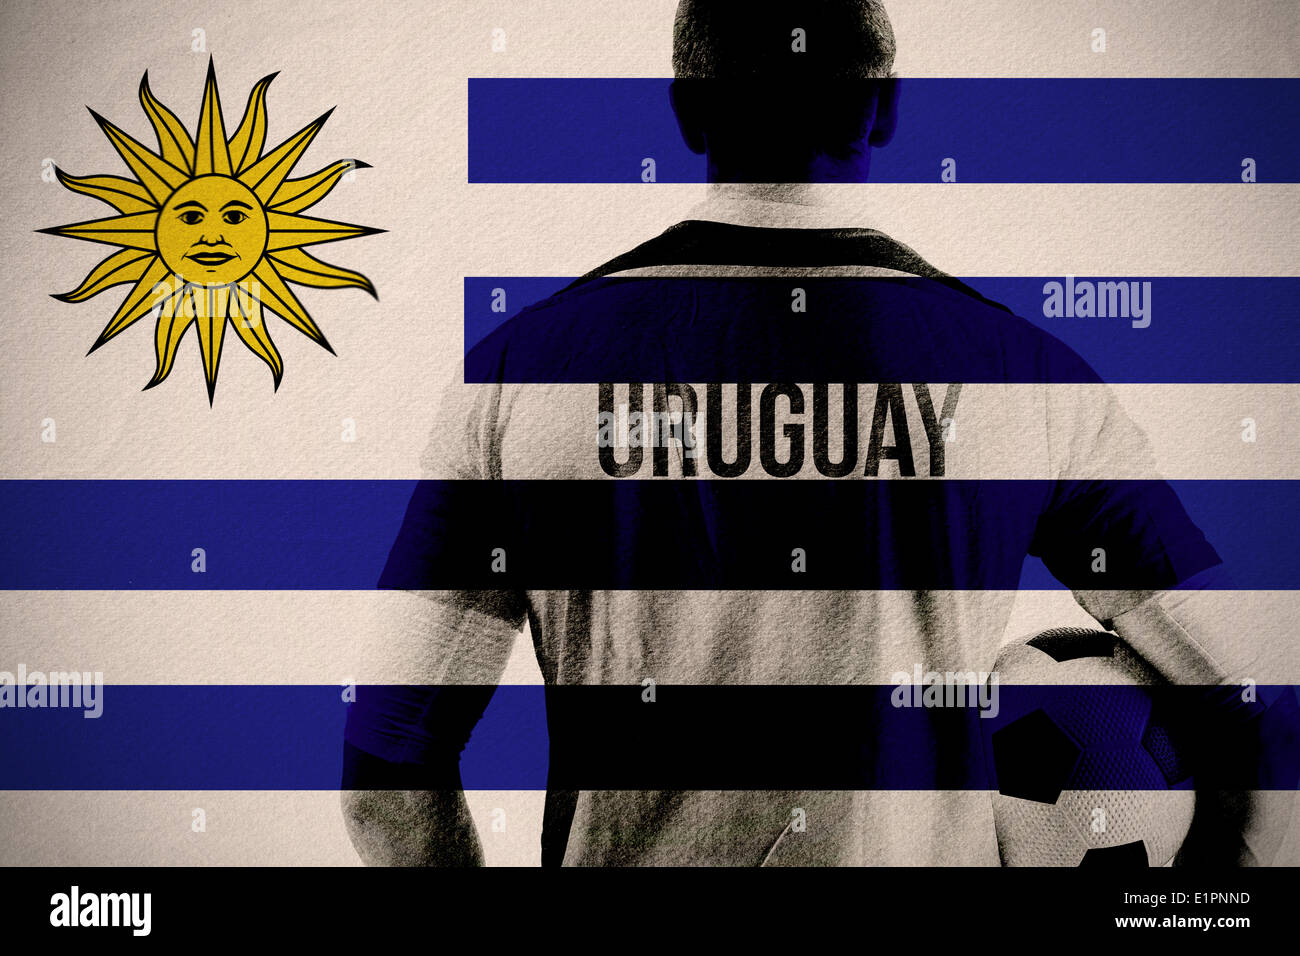 Imagen compuesta de Uruguay Fútbol Jugador con la bola Foto de stock